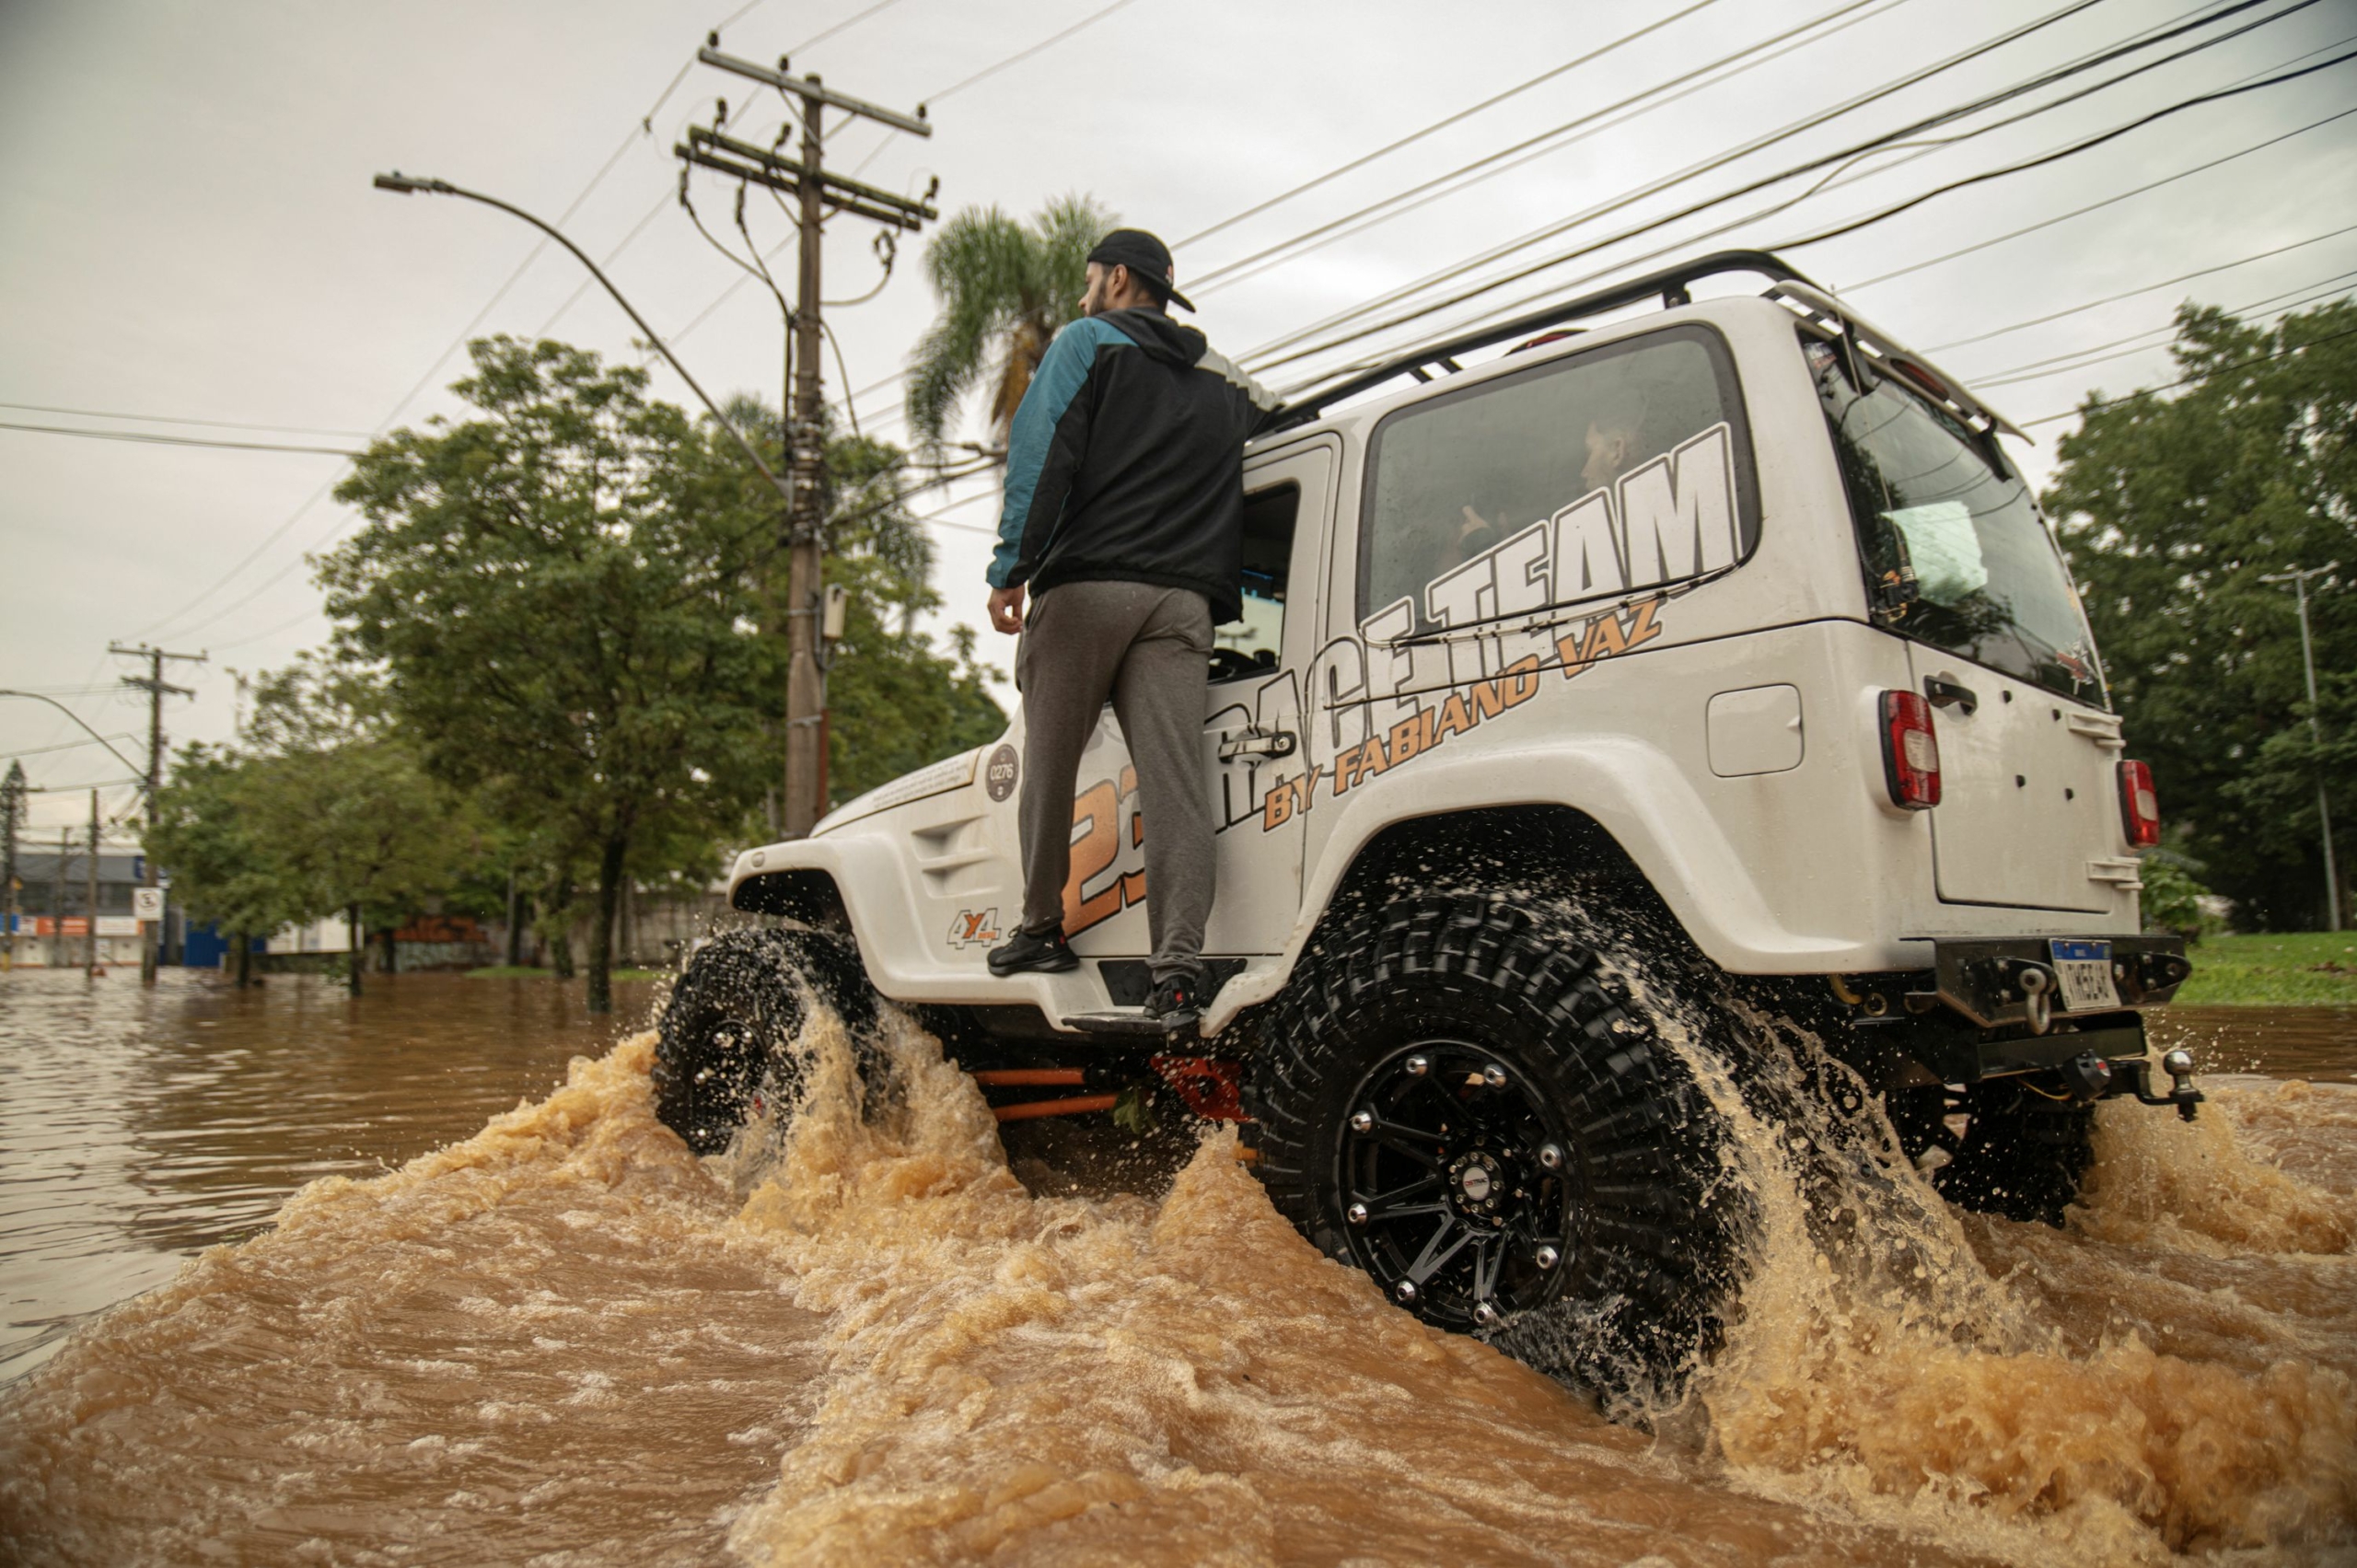 Ảnh chụp hôm 05/05/2024 tại thành phố Porto Alegre, tiểu bang Rio Grande do Sul, Brazil, một số tài xế lái xe off-road tình nguyện giúp đỡ sơ tán người dân bị kẹt trong lũ lụt. (Ảnh: Carlos Fabal/AFP via Getty Images)